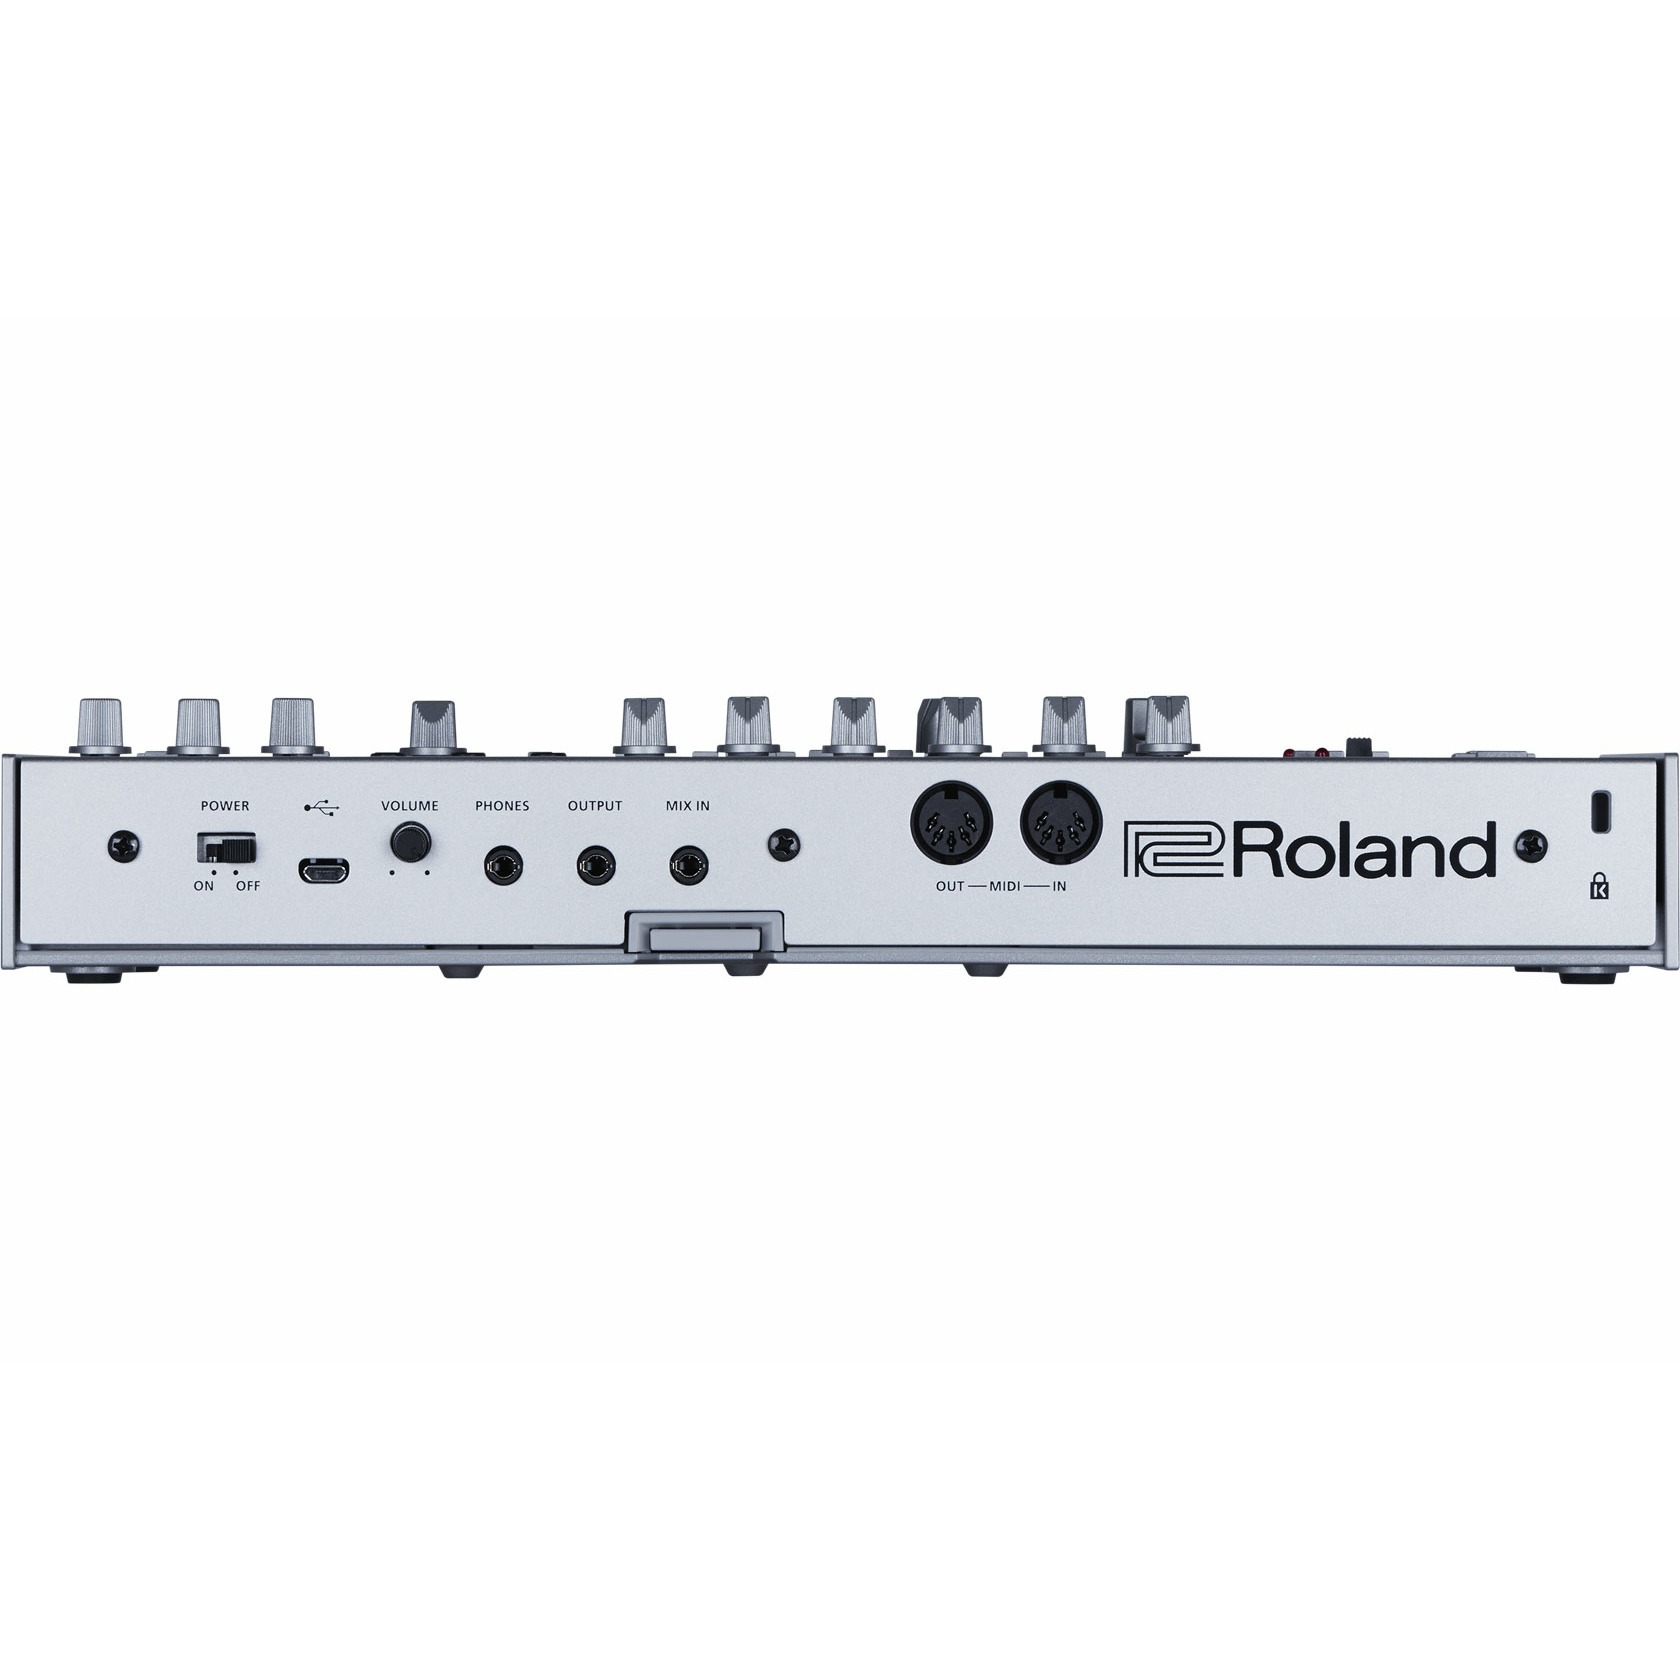 Басовая линия. Roland tr 303 Bass line. Синтезаторы Roland TB-03. Роланд ТБ-03. Синтезатор Roland TB-03 Silver.